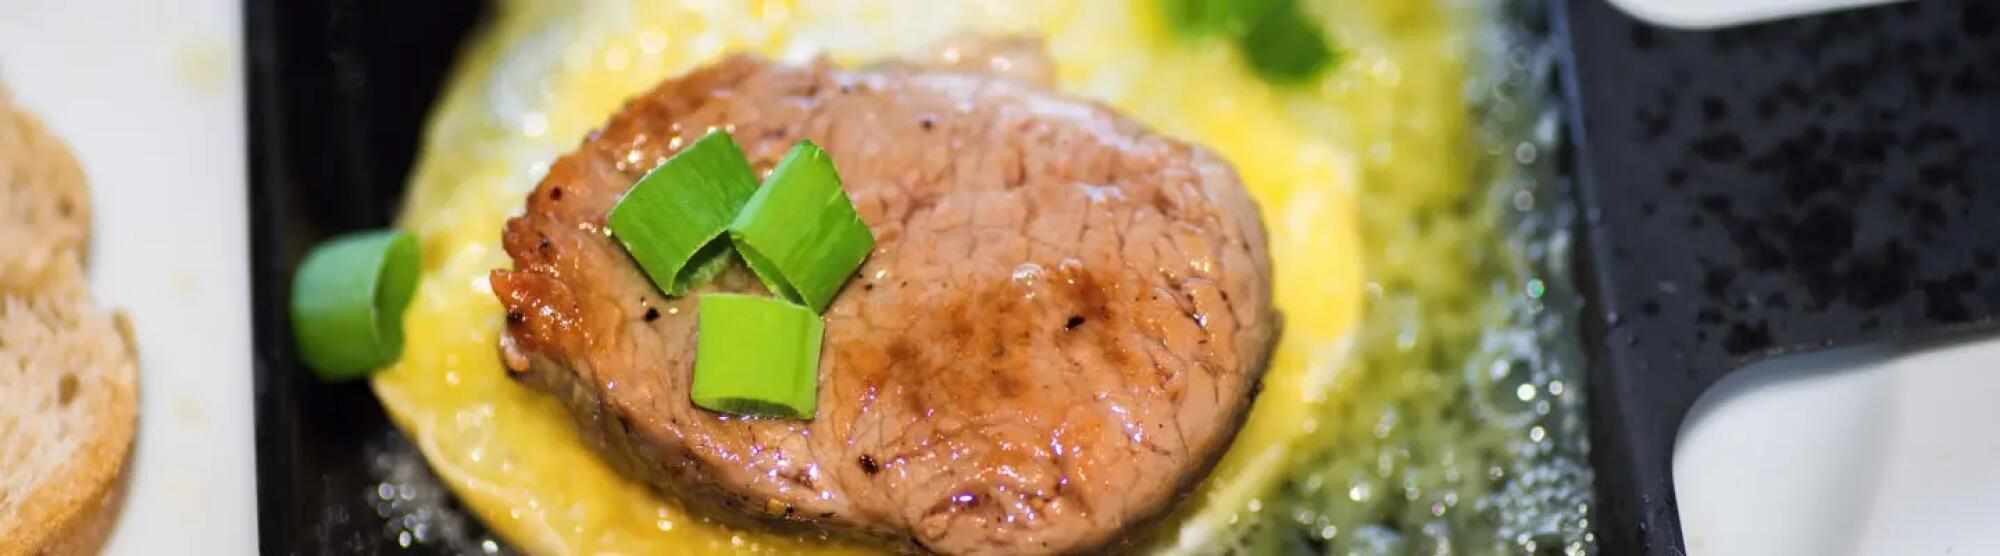 Recette : Raclette au steak haché poivron vert